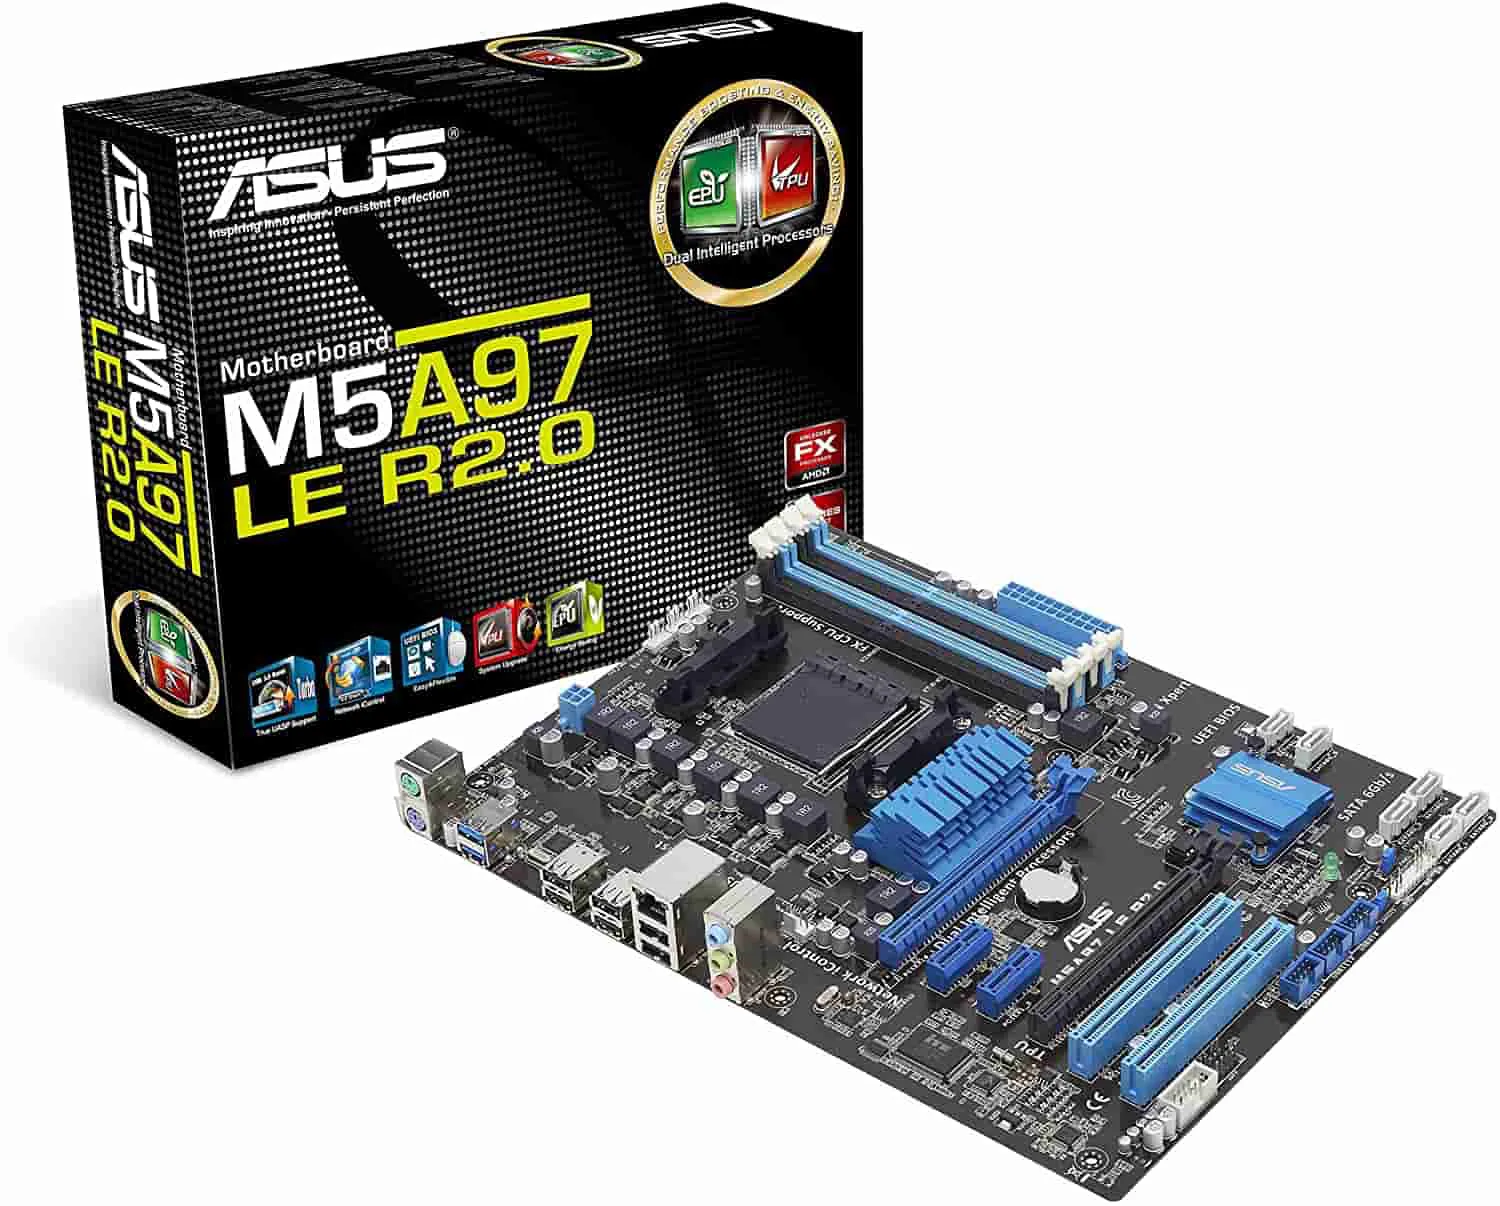 ASUS M5A97 LE R2.0 AM3+ AMD 970